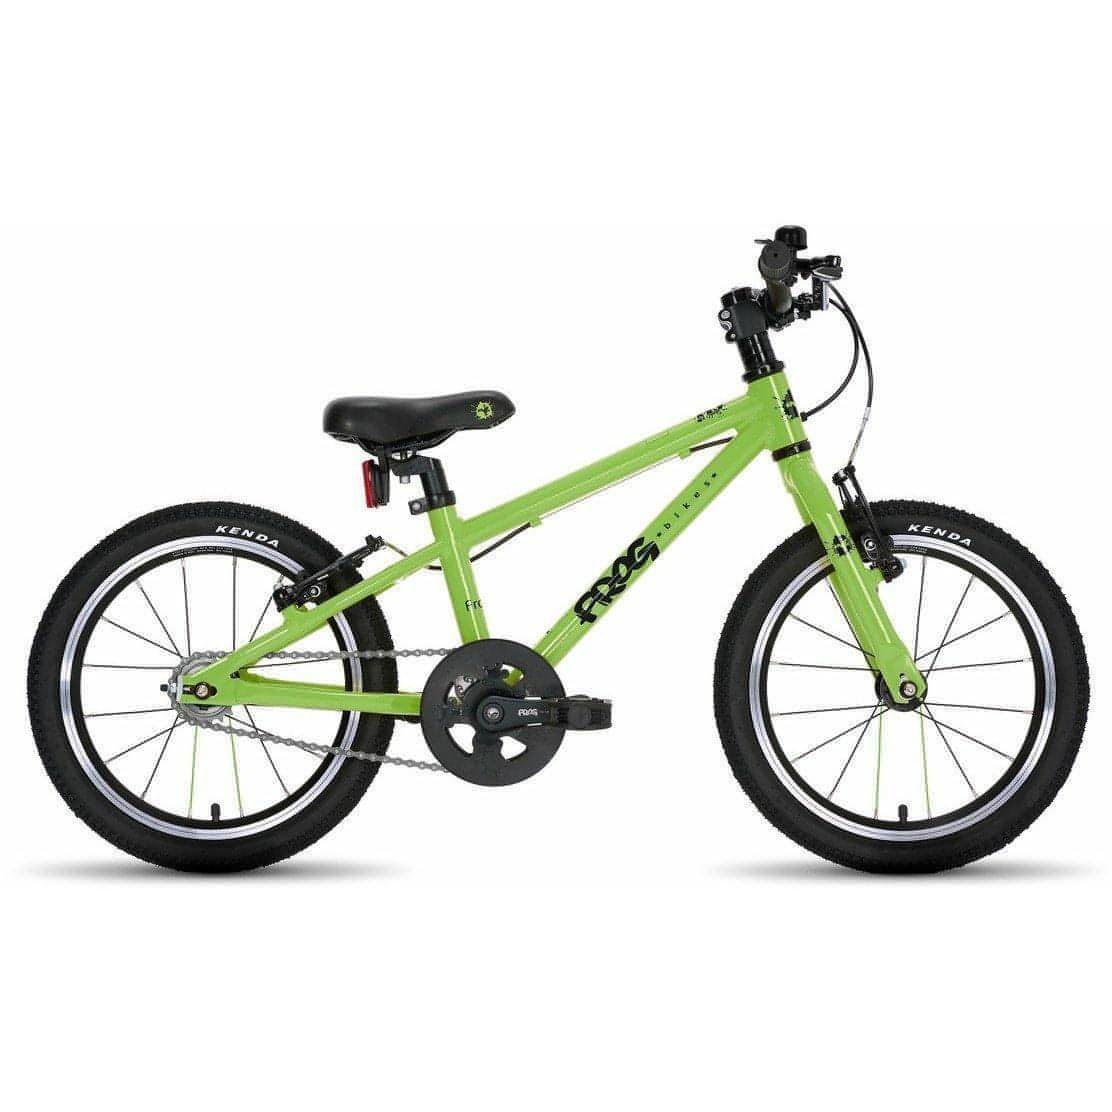 Frog 44 16" Junior Bike 2021 - Green 5060488651809 - Start Fitness